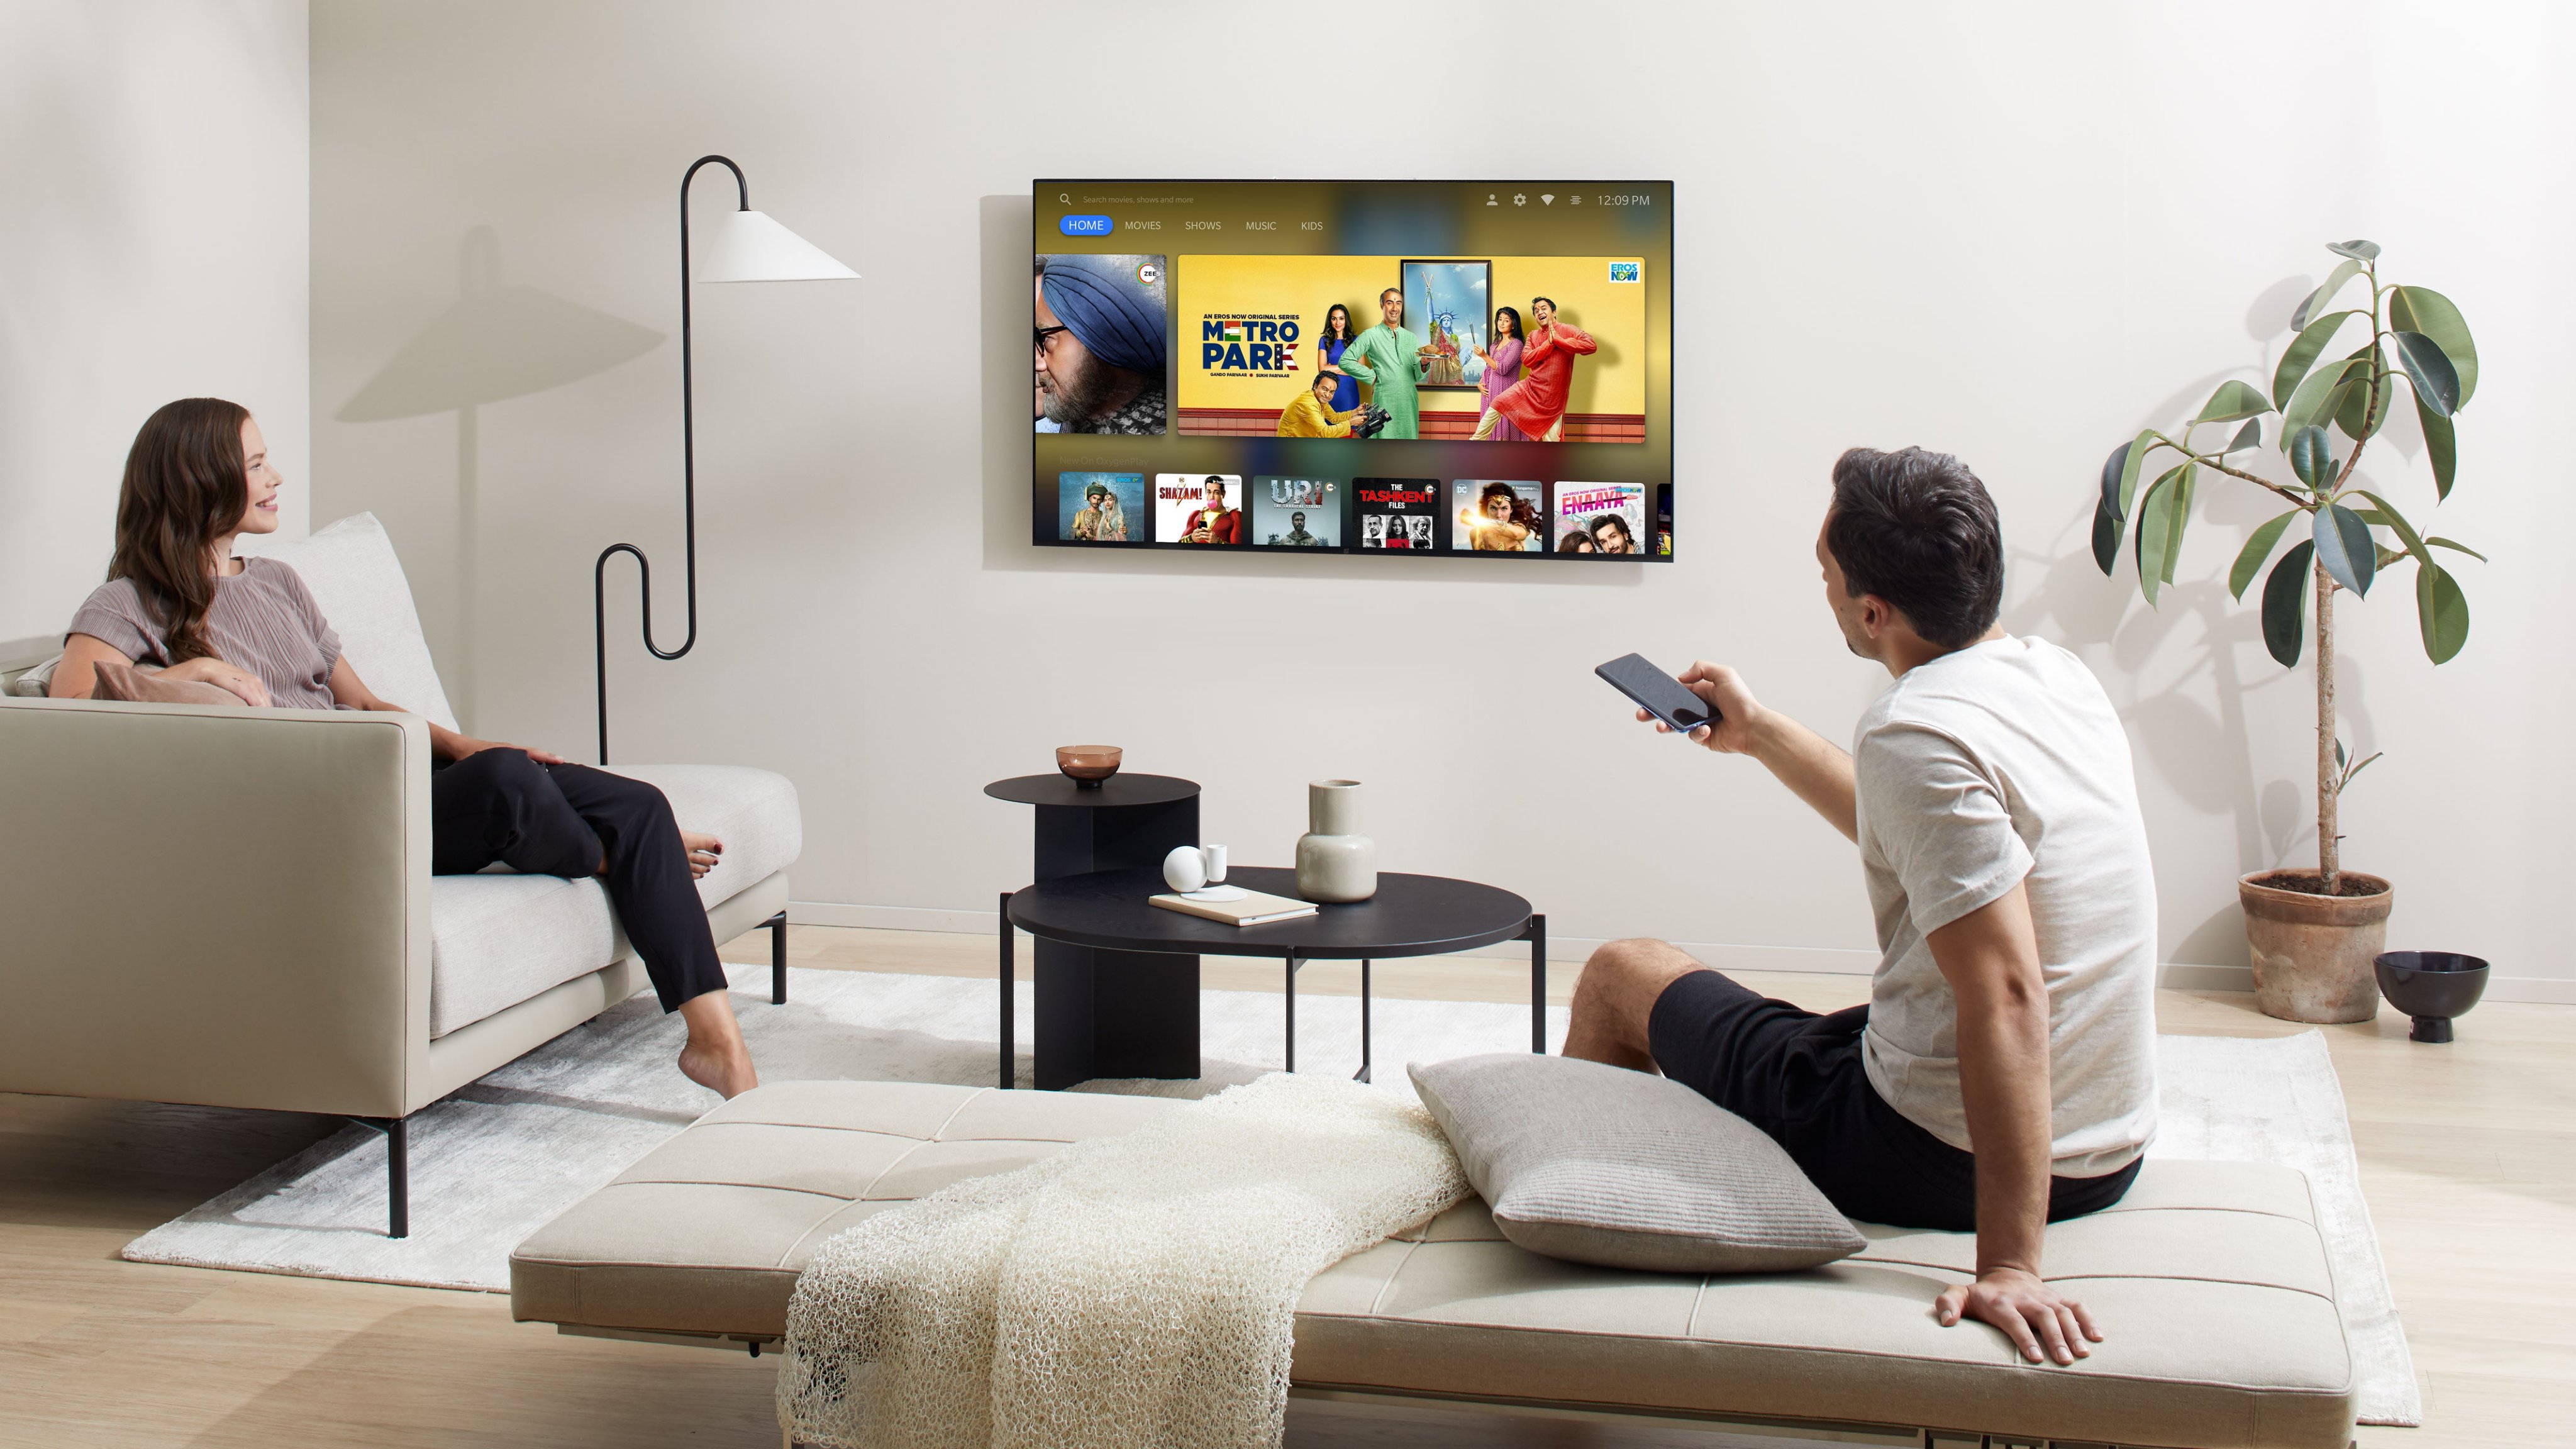 OnePlus TV : une image révèle l’interface, OxygenPlay et plus encore